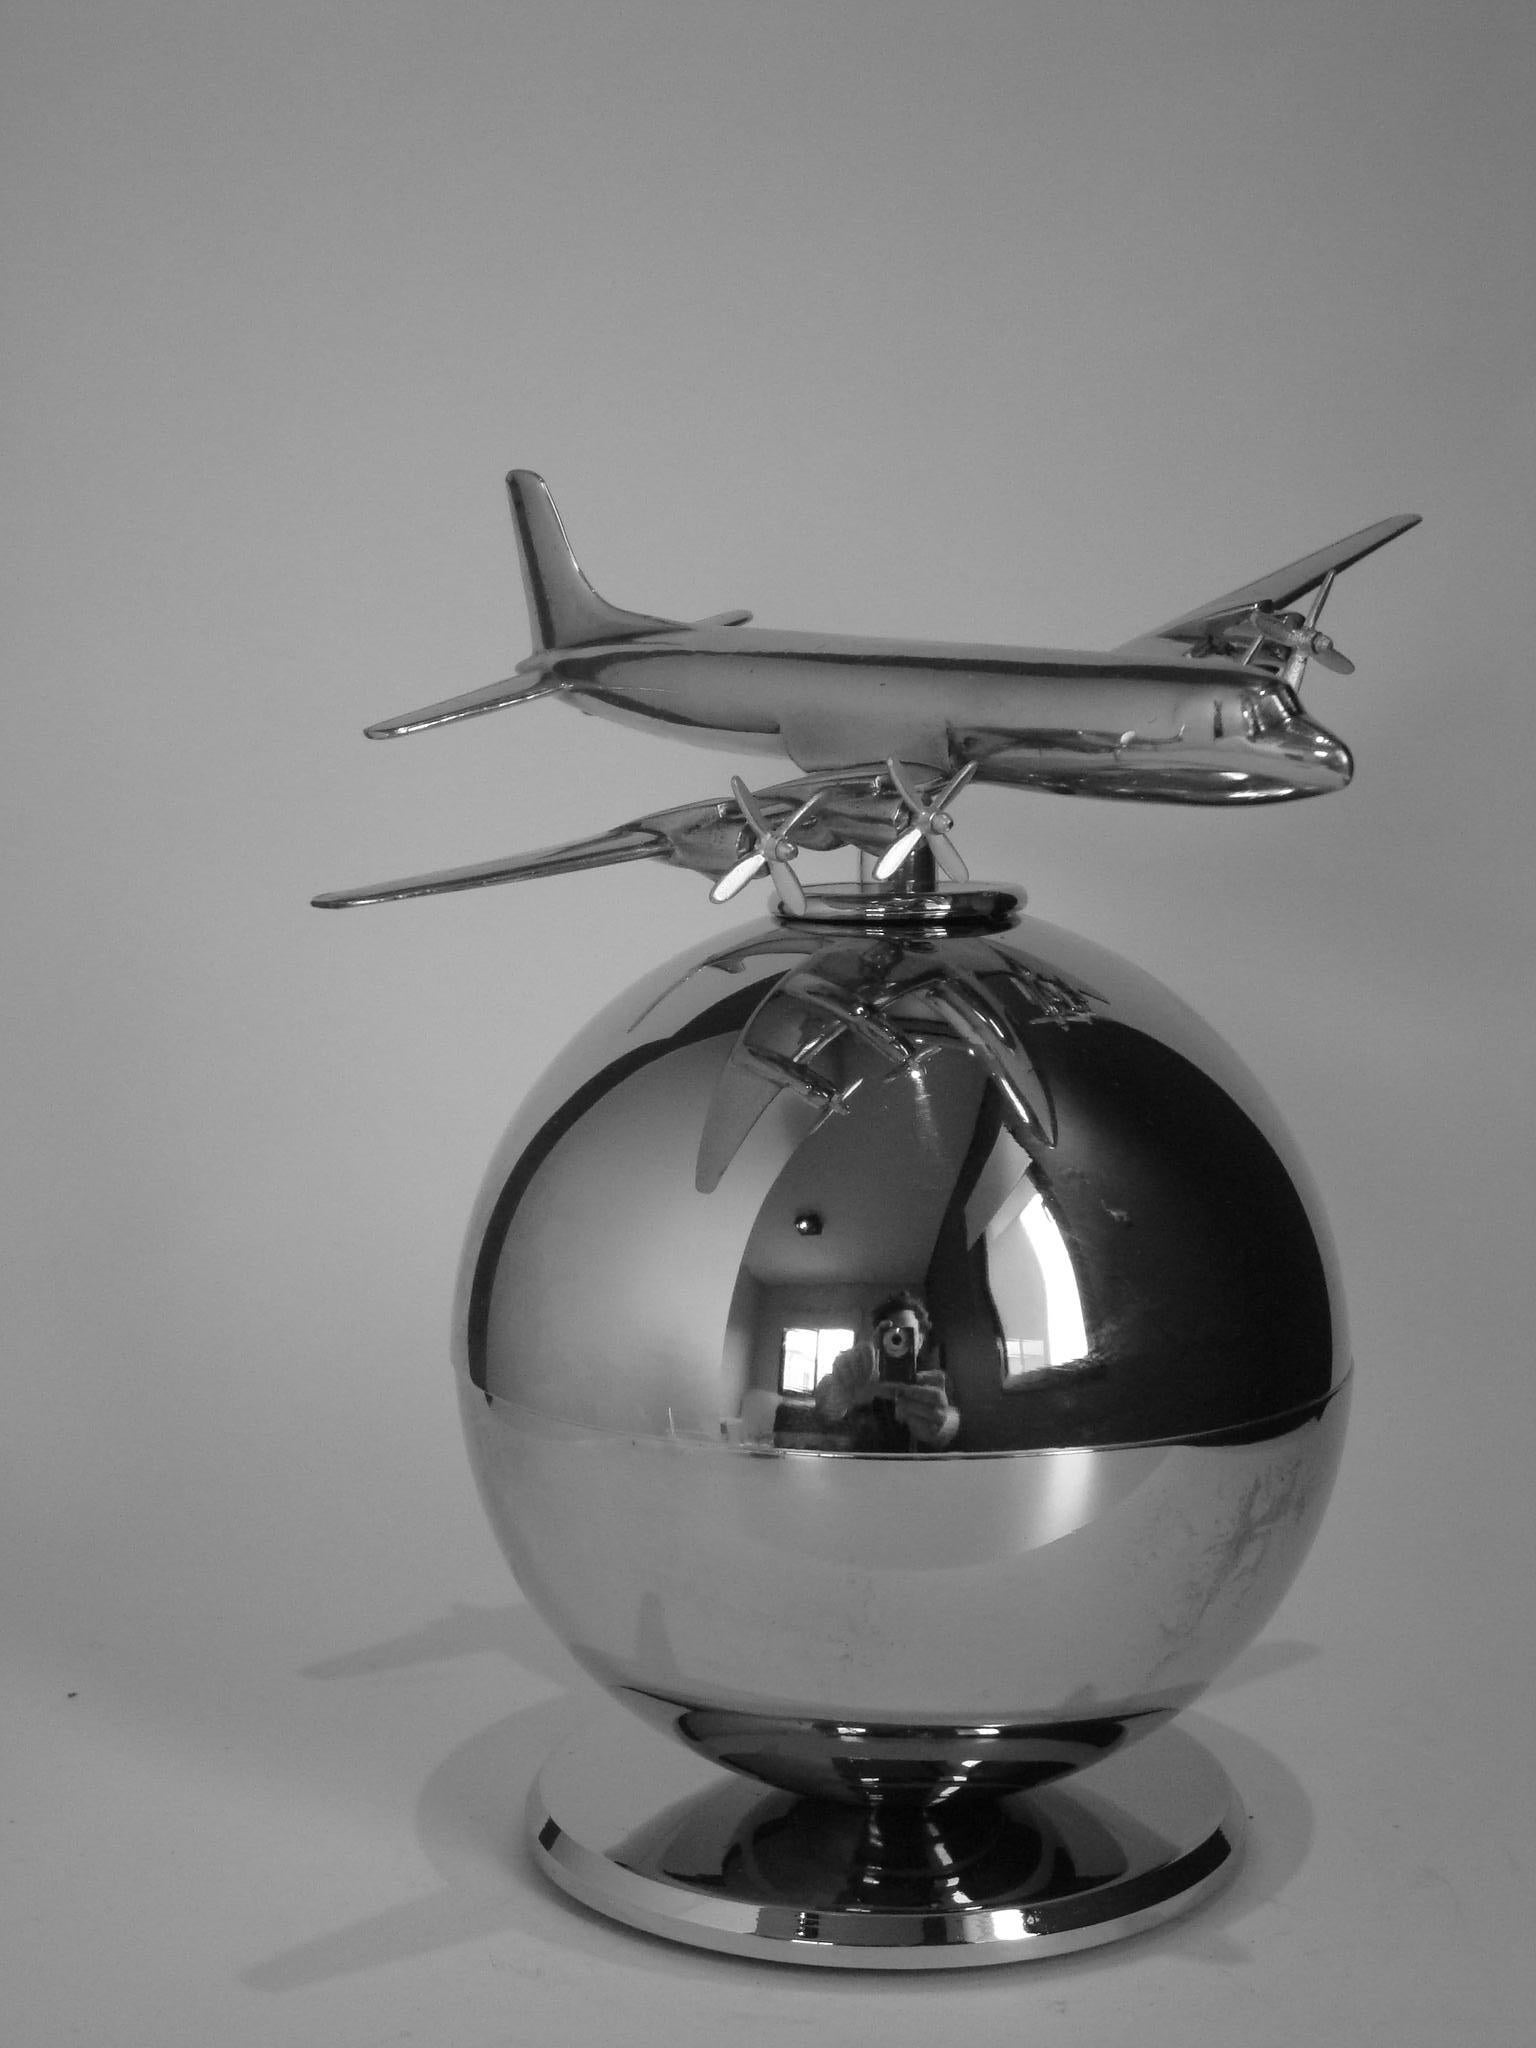 Modell Luftfahrt. Oldtimer-Flugzeugmodell aus Aluminium. Das Modell ist eine Mischung aus Art Deco und Midcentury Design. Sie ist über einer versilberten Kugel/Globus/Welt montiert.
Die Position des Flugzeugs kann eingestellt werden.
Das perfekte